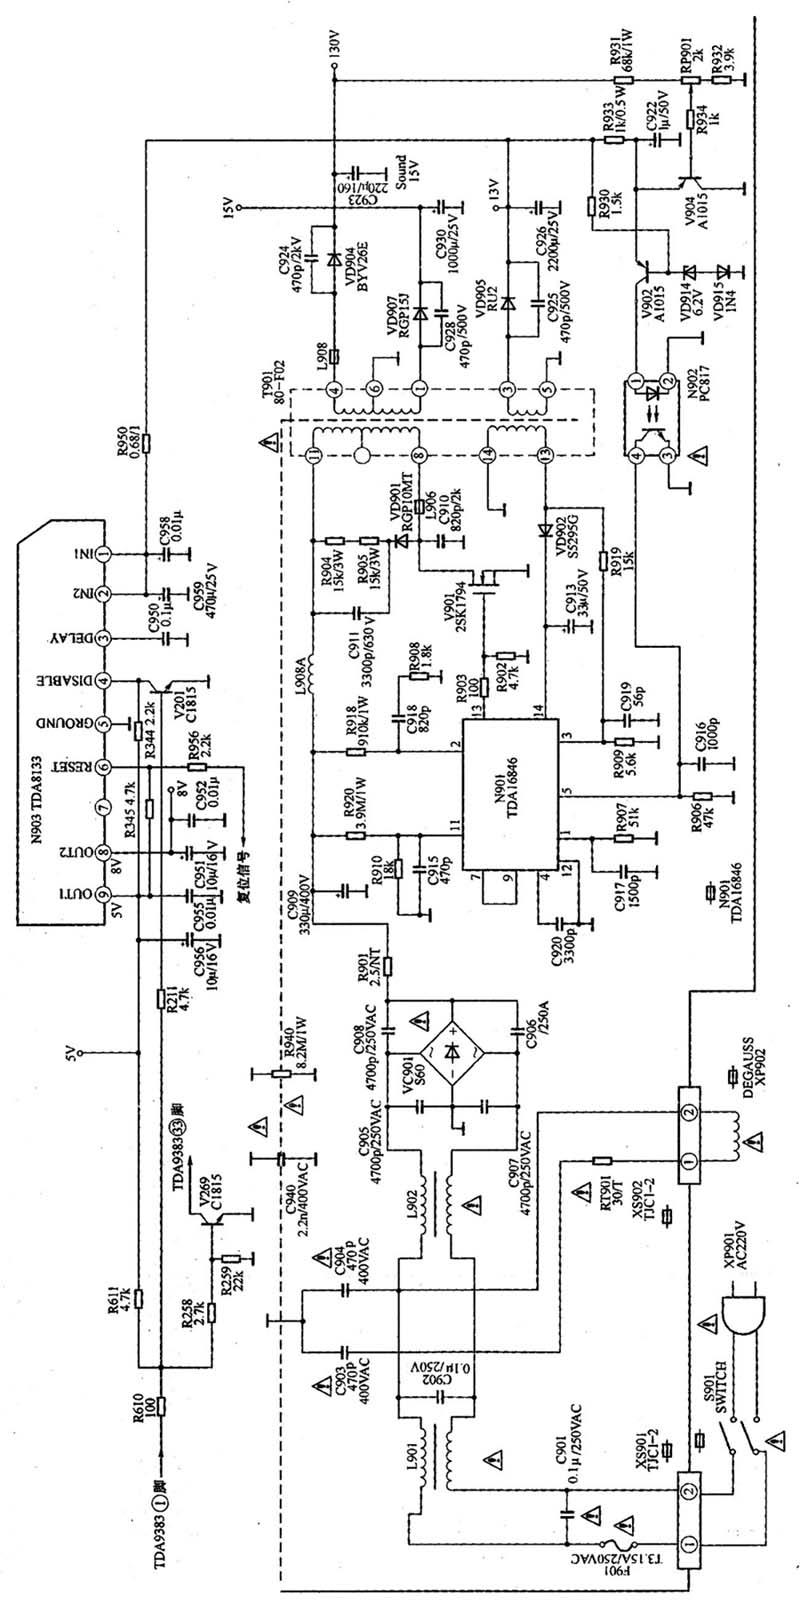 图2 康佳TDA9383 超级芯片彩电电源电路图